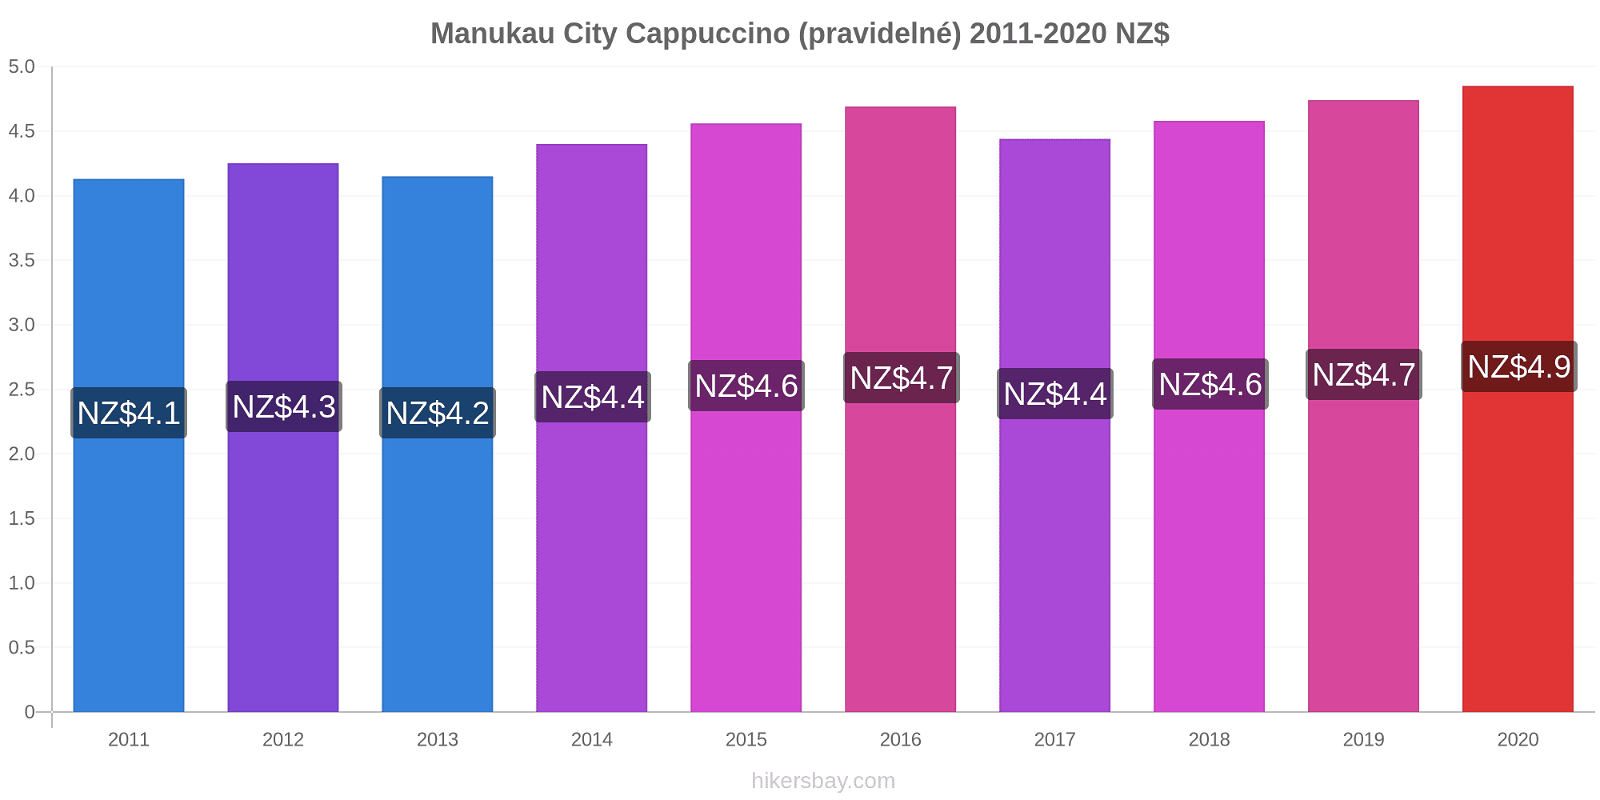 Manukau City změny cen Cappuccino (pravidelné) hikersbay.com